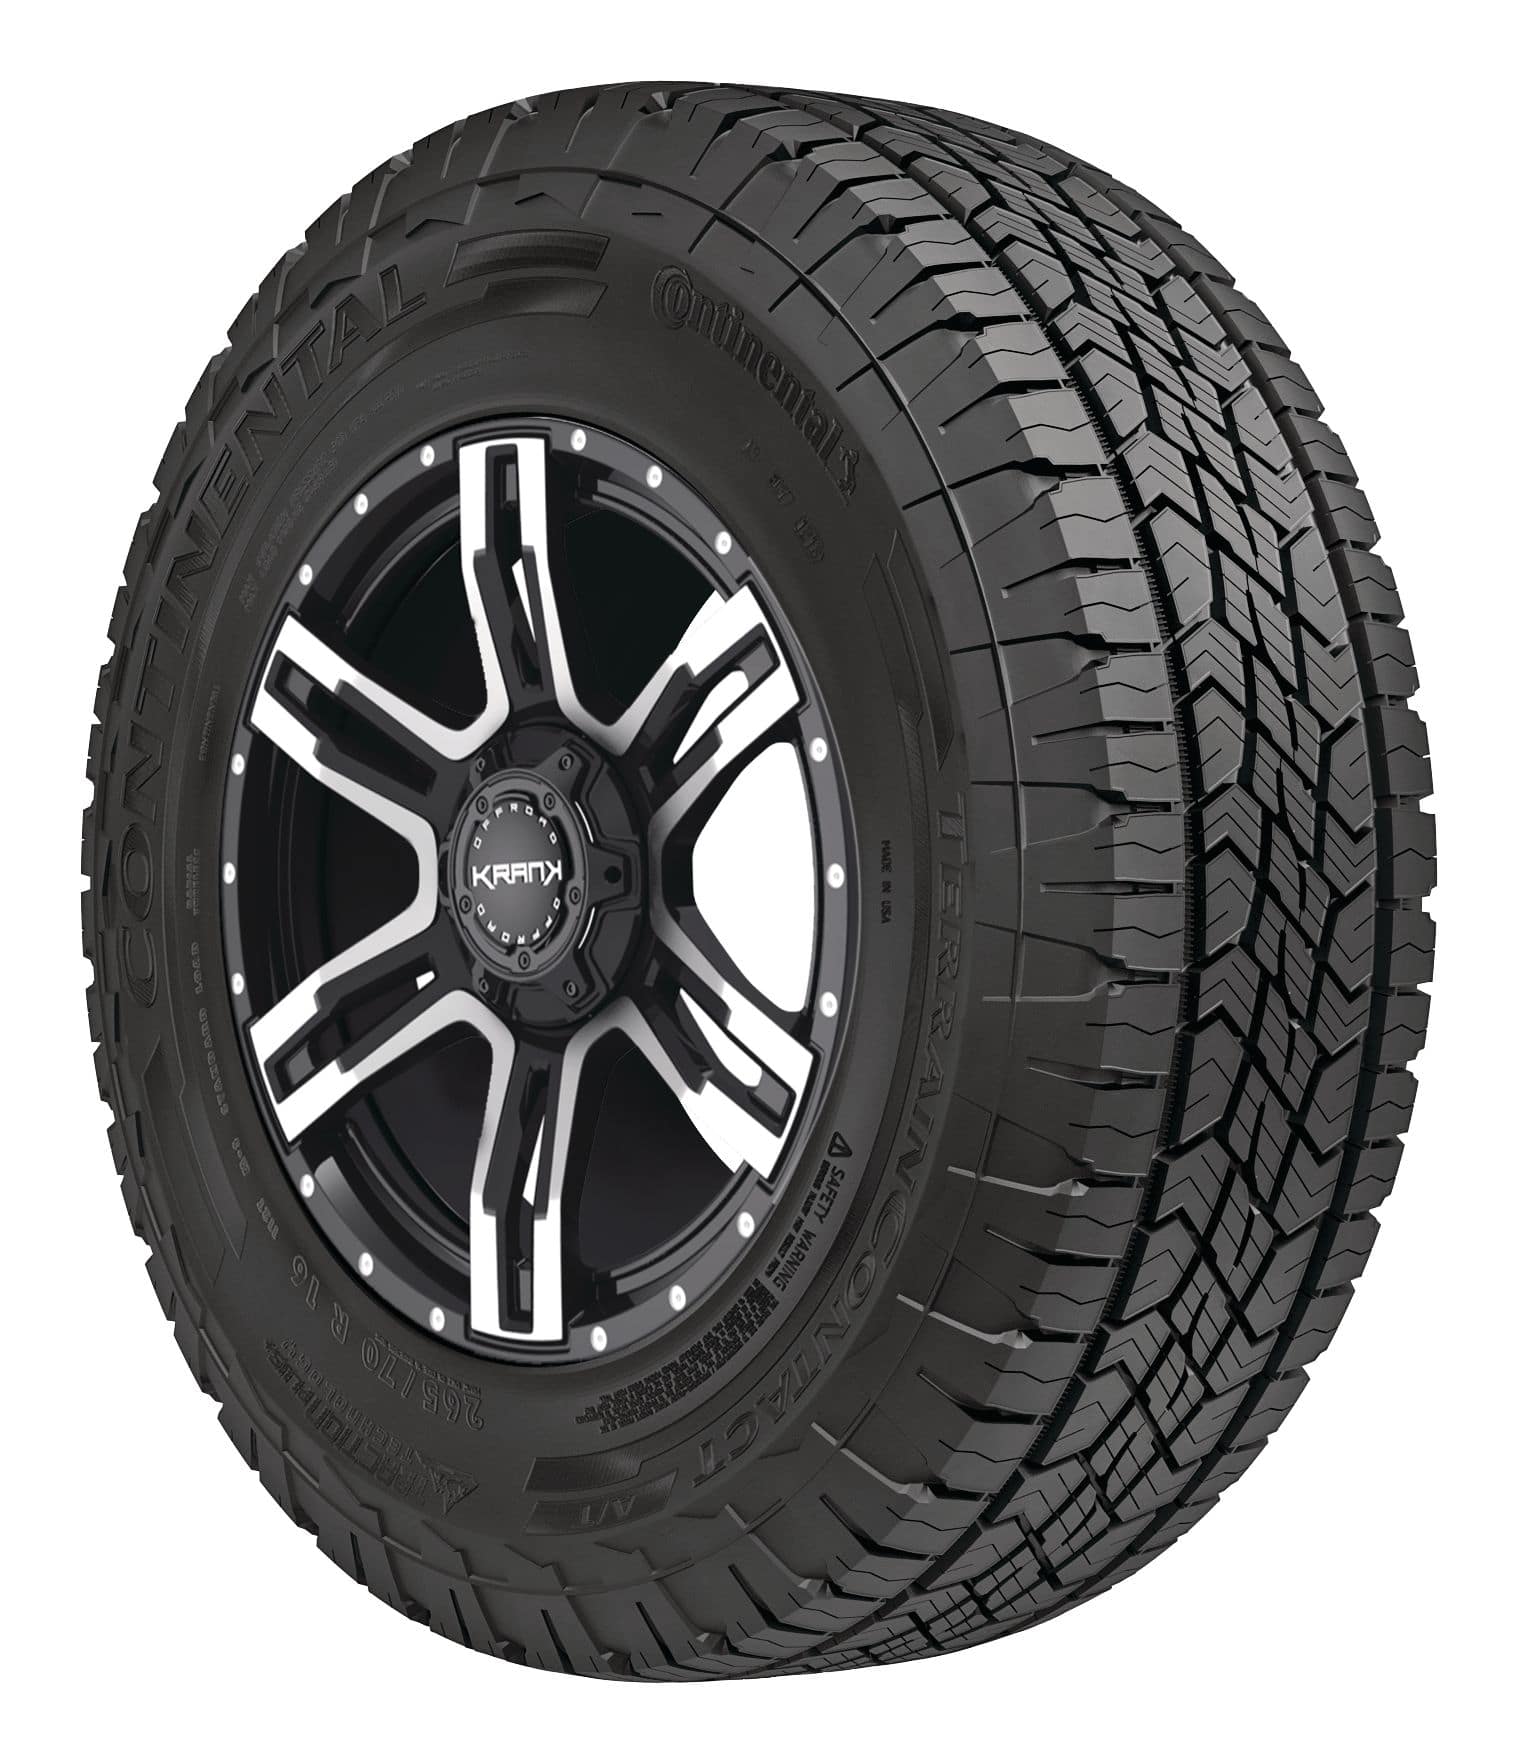 All-Terrain Tires for Cars & Trucks